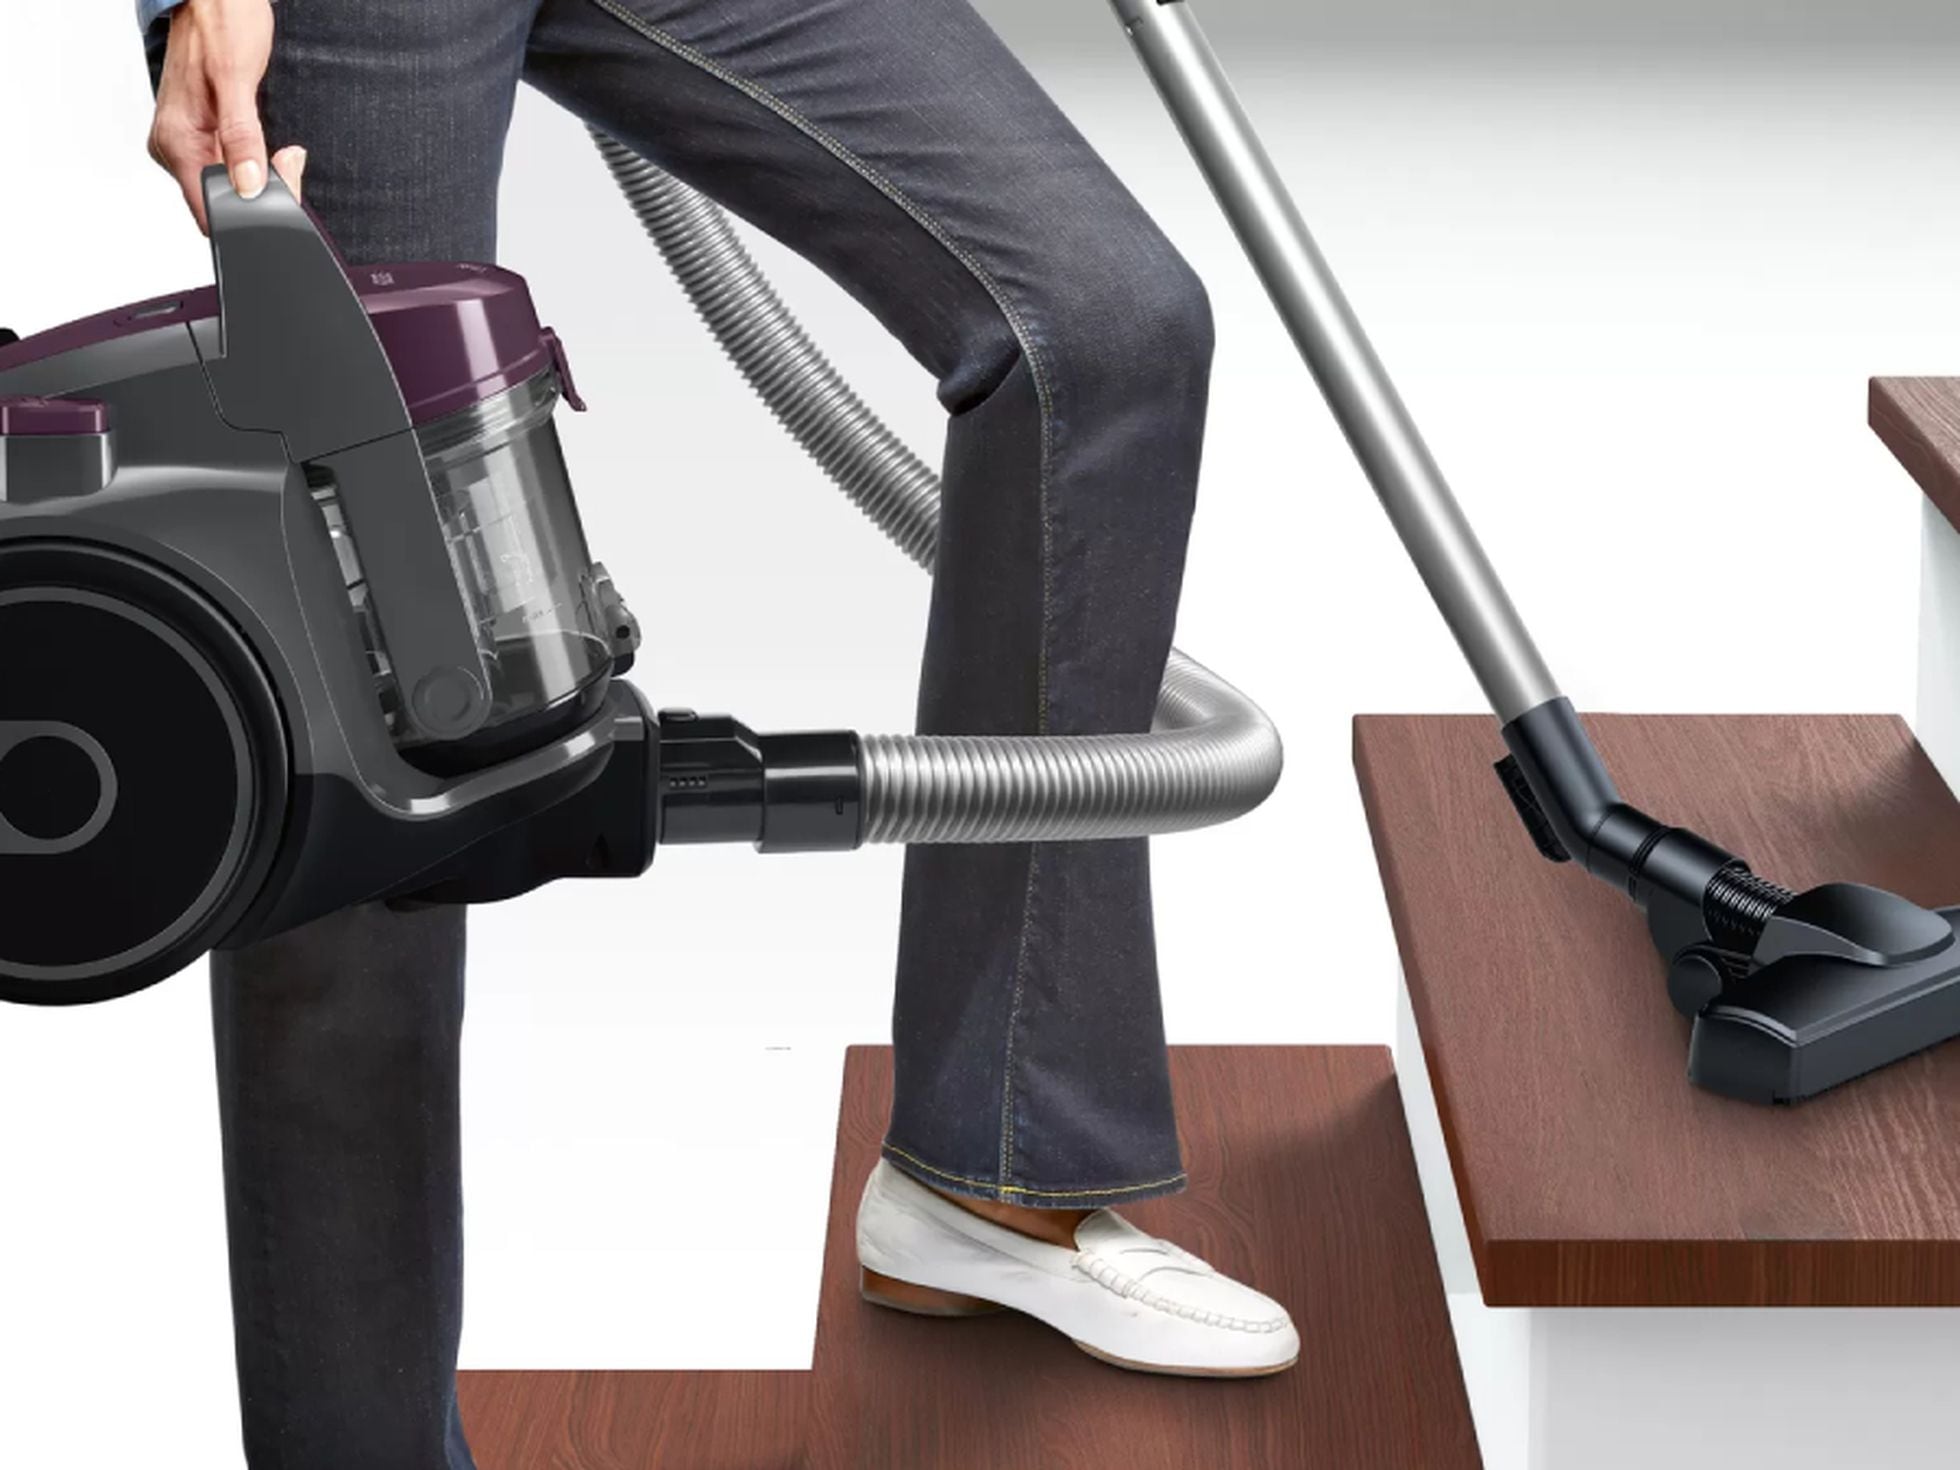 La aspiradora sin cable de Bosch está ahora rebajada, te la llevas por 479  euros ¡e incluye un taladro de regalo!